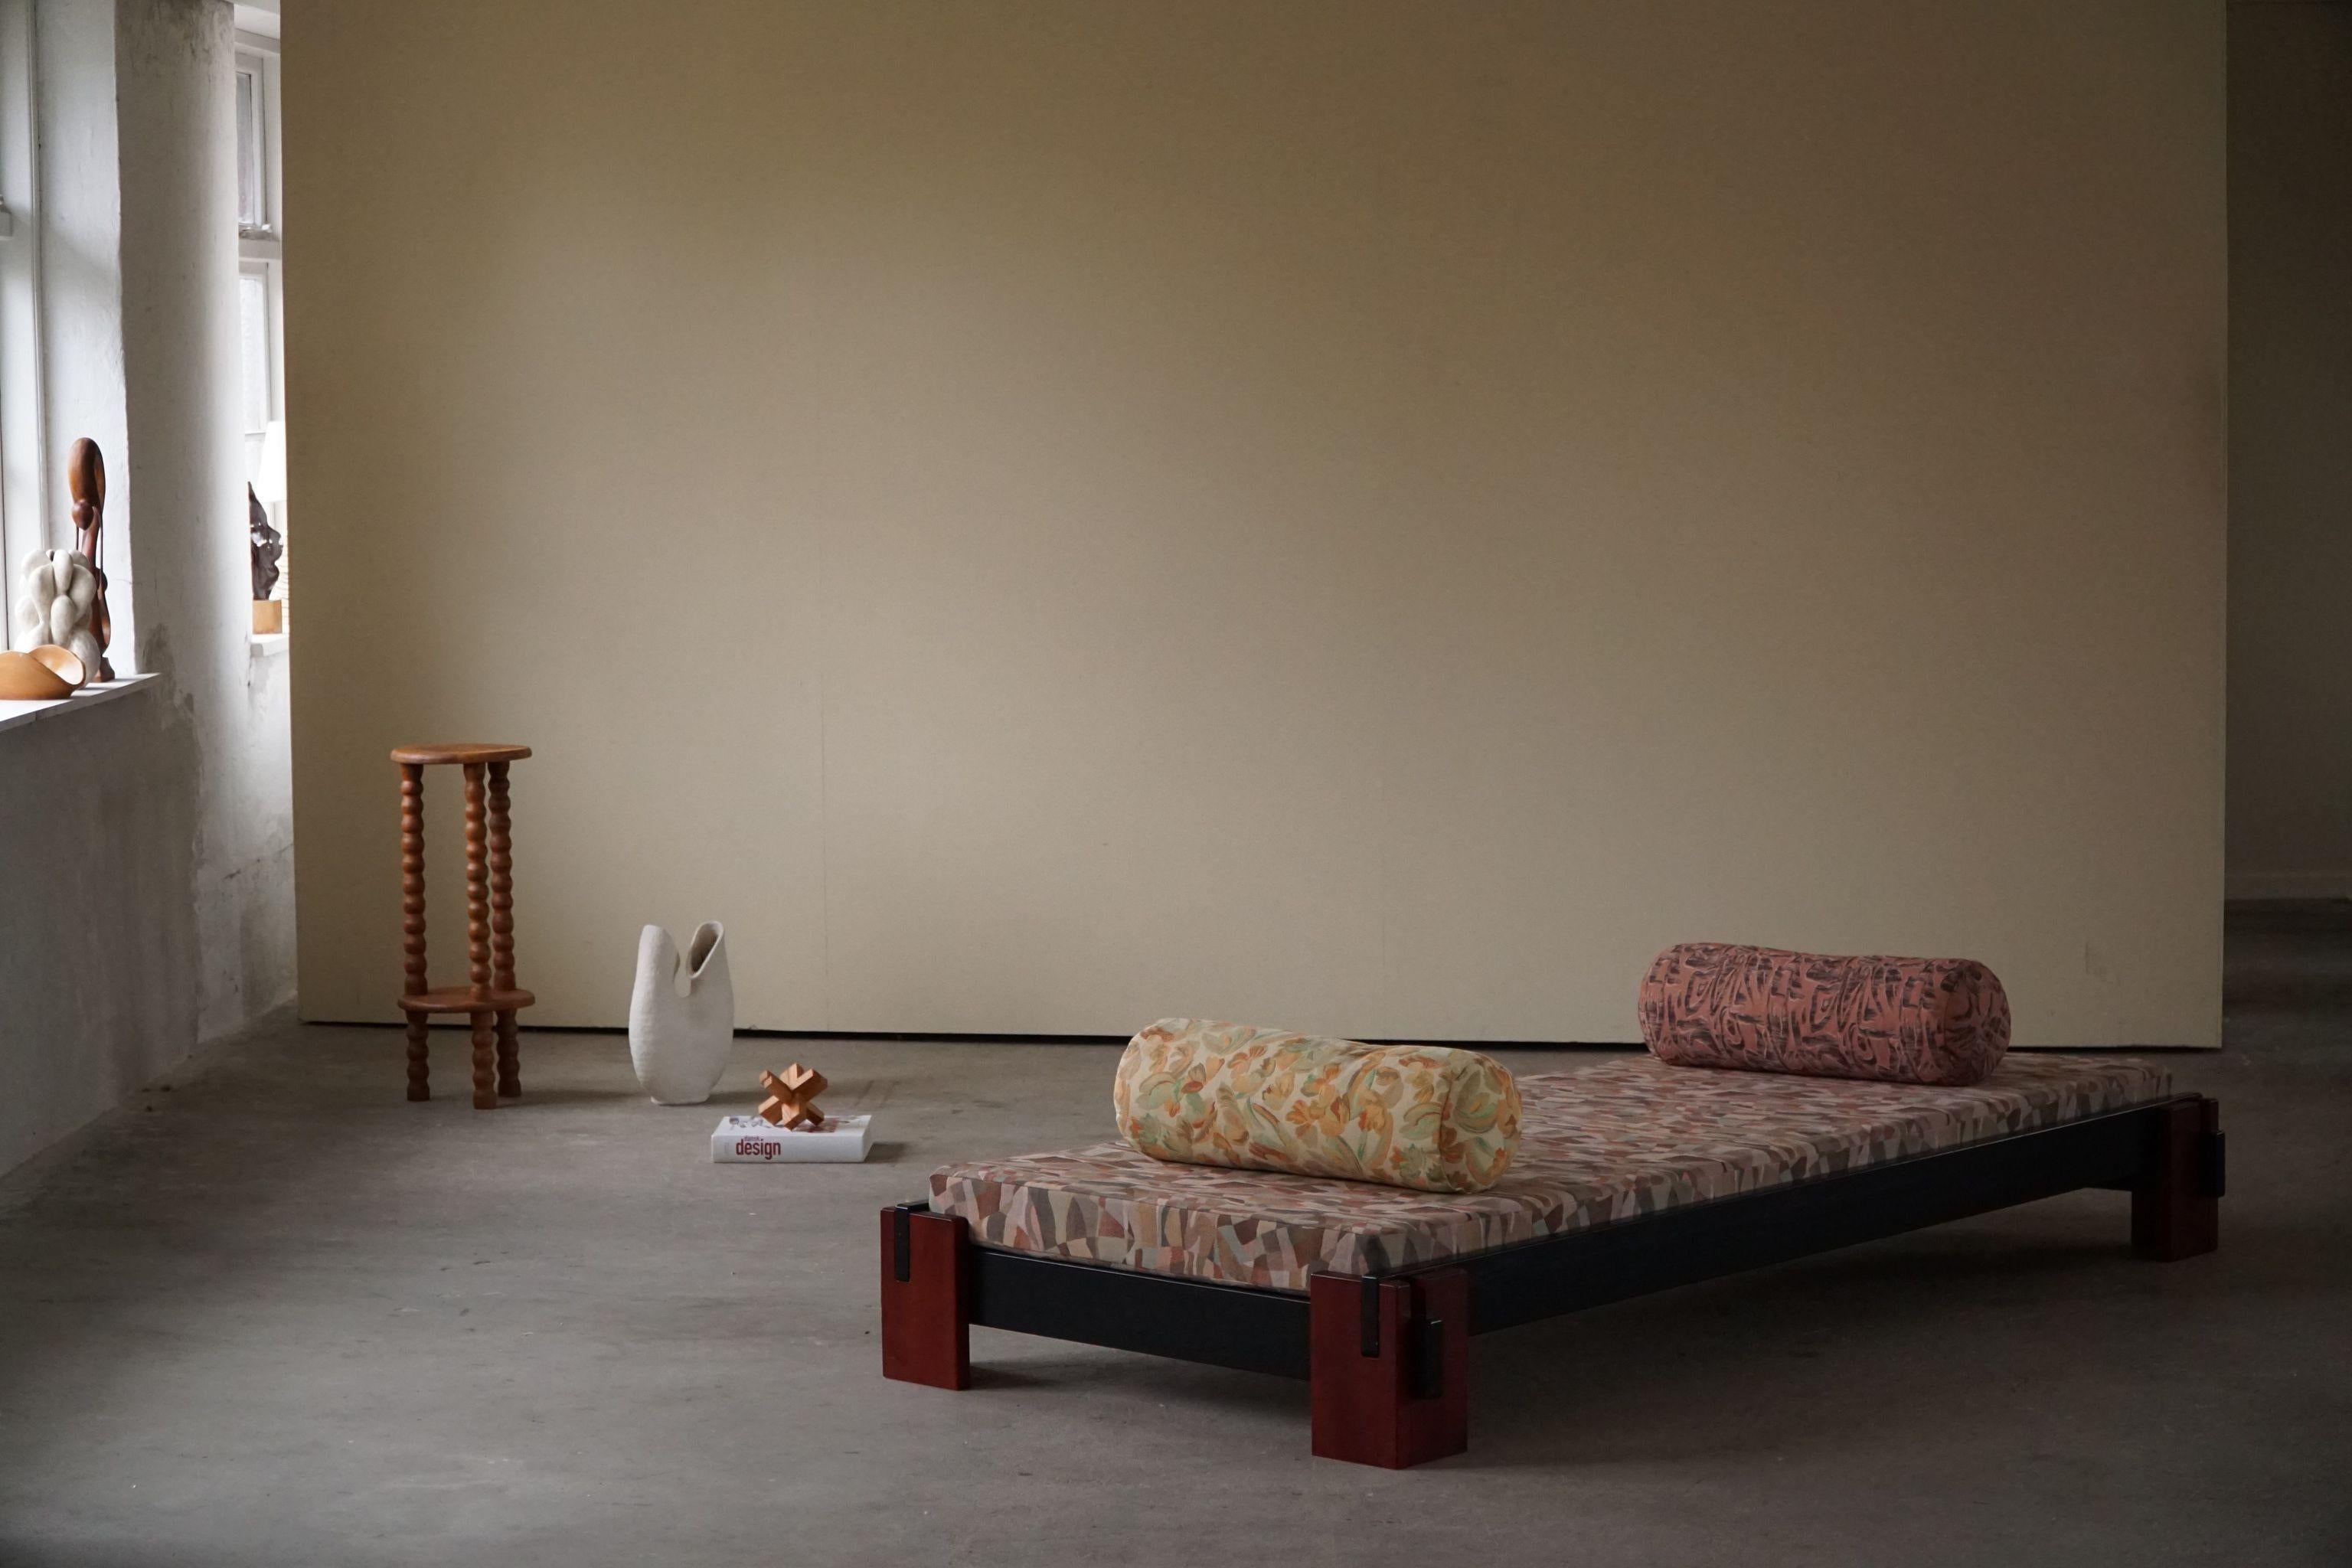 Ein verspieltes, minimalistisches Daybed/Sofa mit zwei Kissen, neu gepolstert mit buntem Vintage-Gobelin-Stoff aus den 80er Jahren. Hergestellt von einem dänischen Tischler in den 1980er Jahren.

Dieses schöne Vintage-Tagesbett passt zu vielen